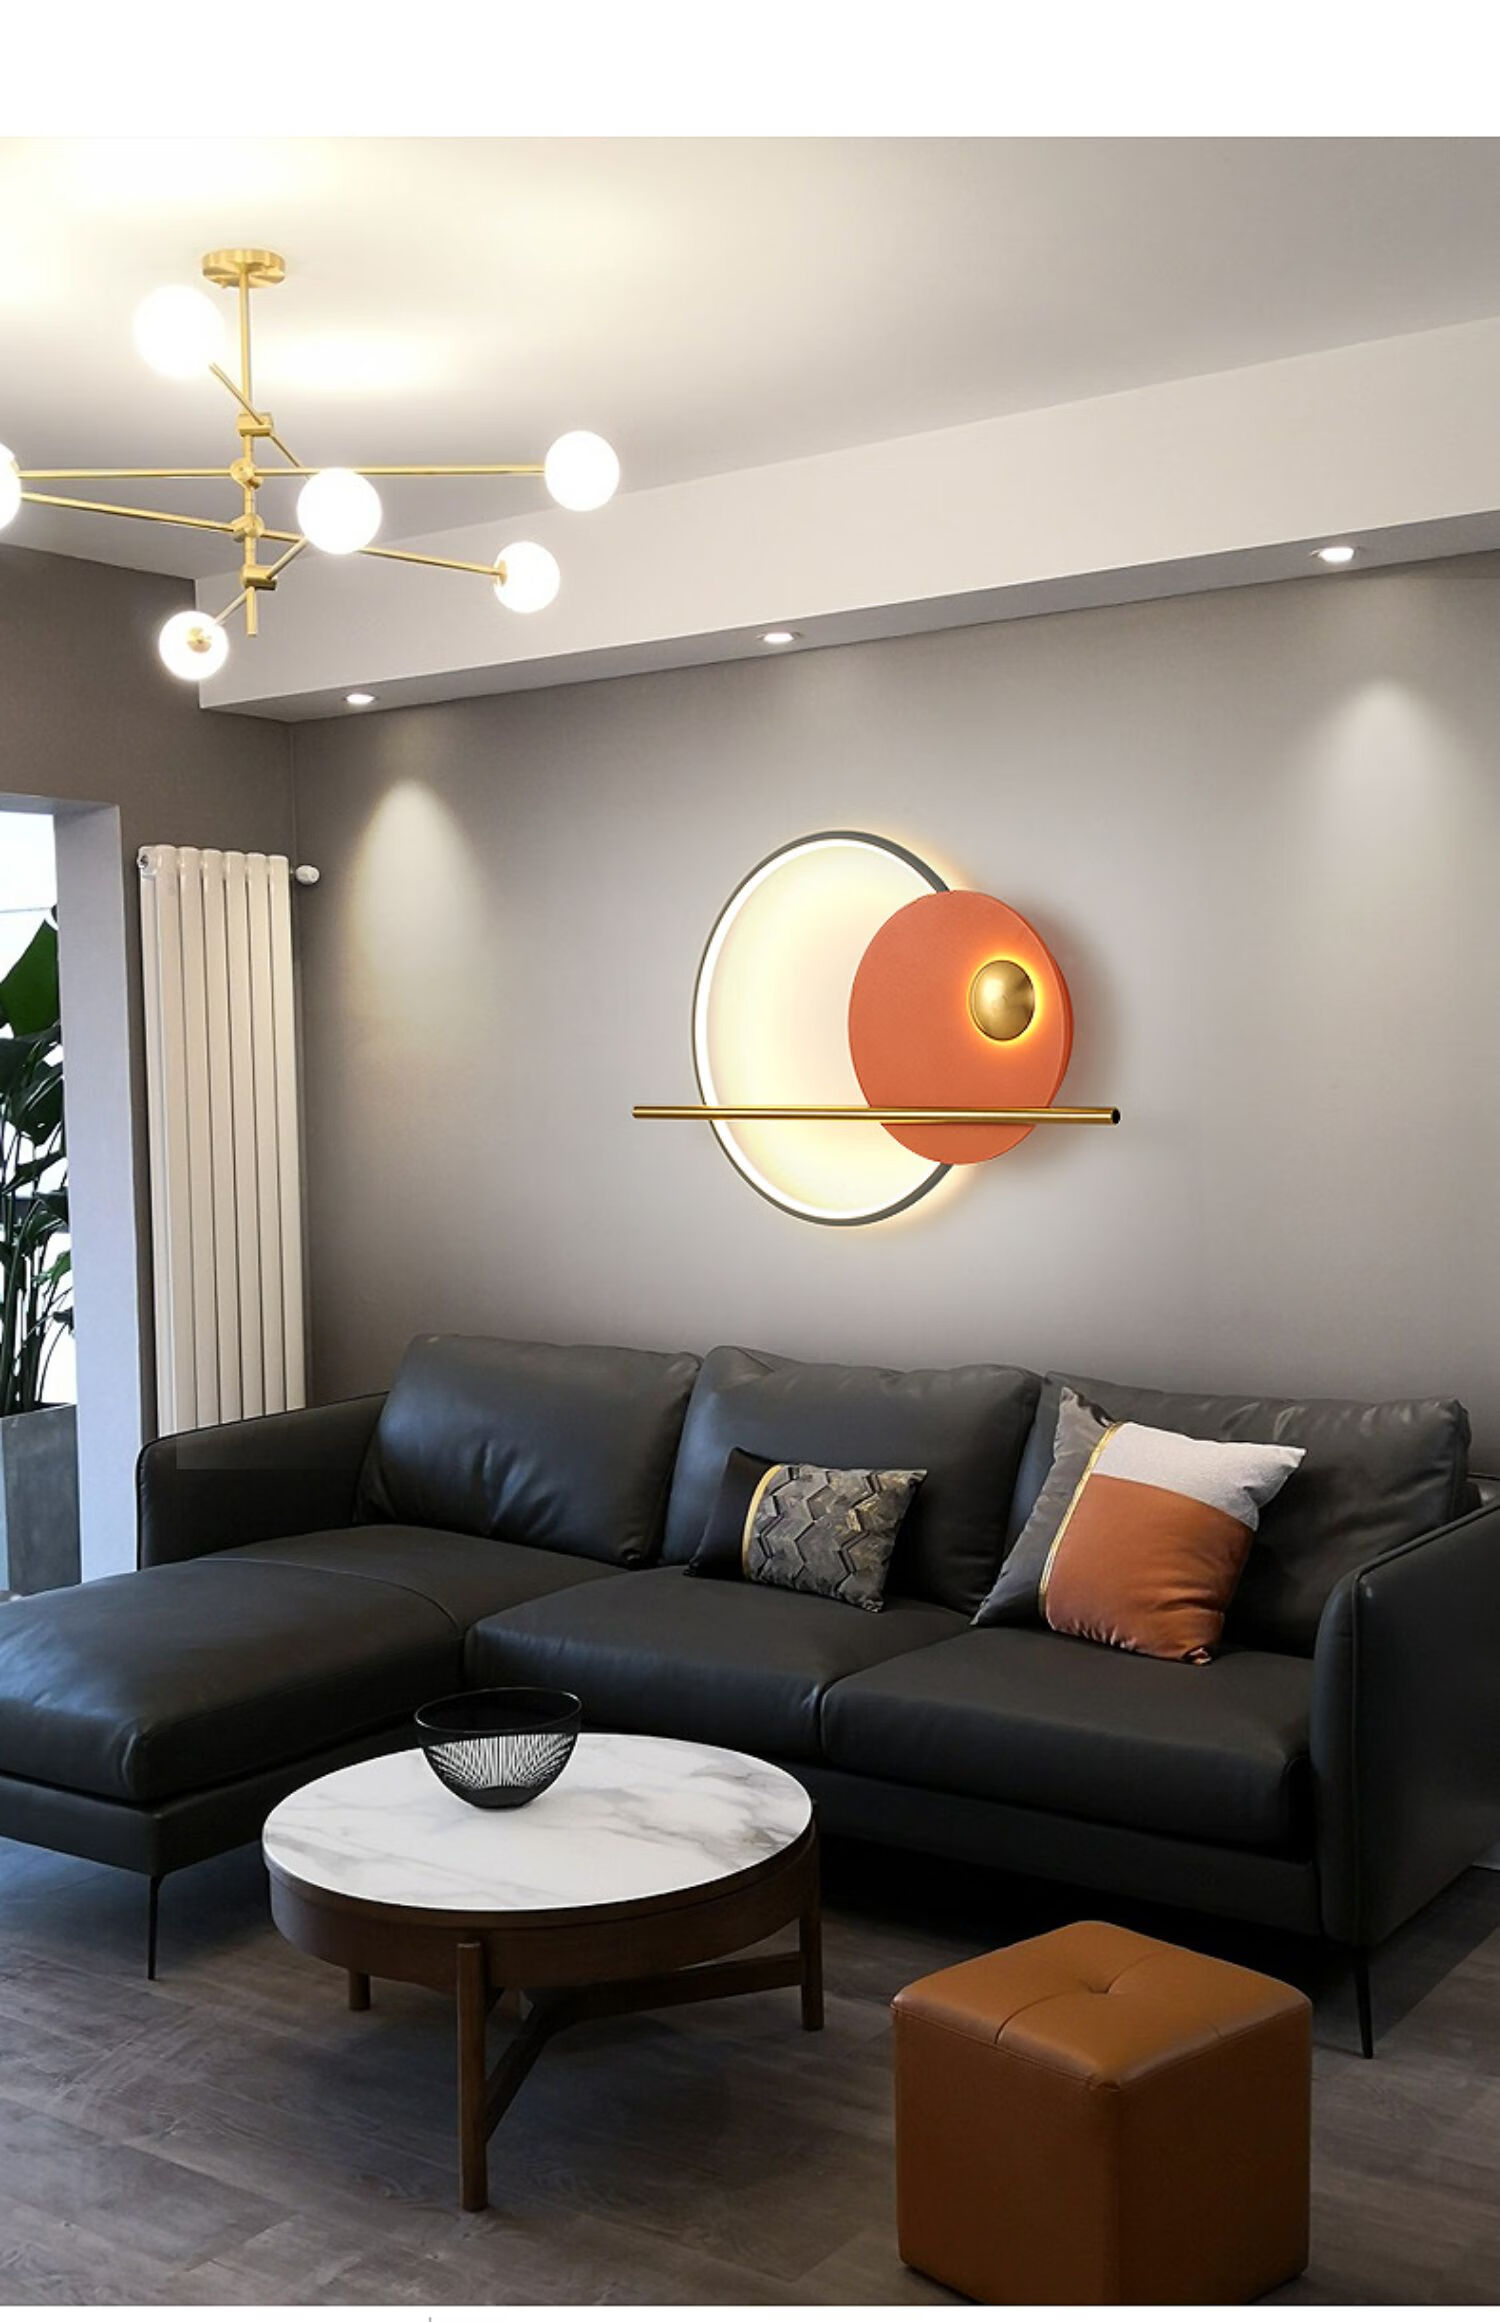 安洛优客厅背景墙壁灯北欧简约现代设计师艺术创意沙发过道led装饰